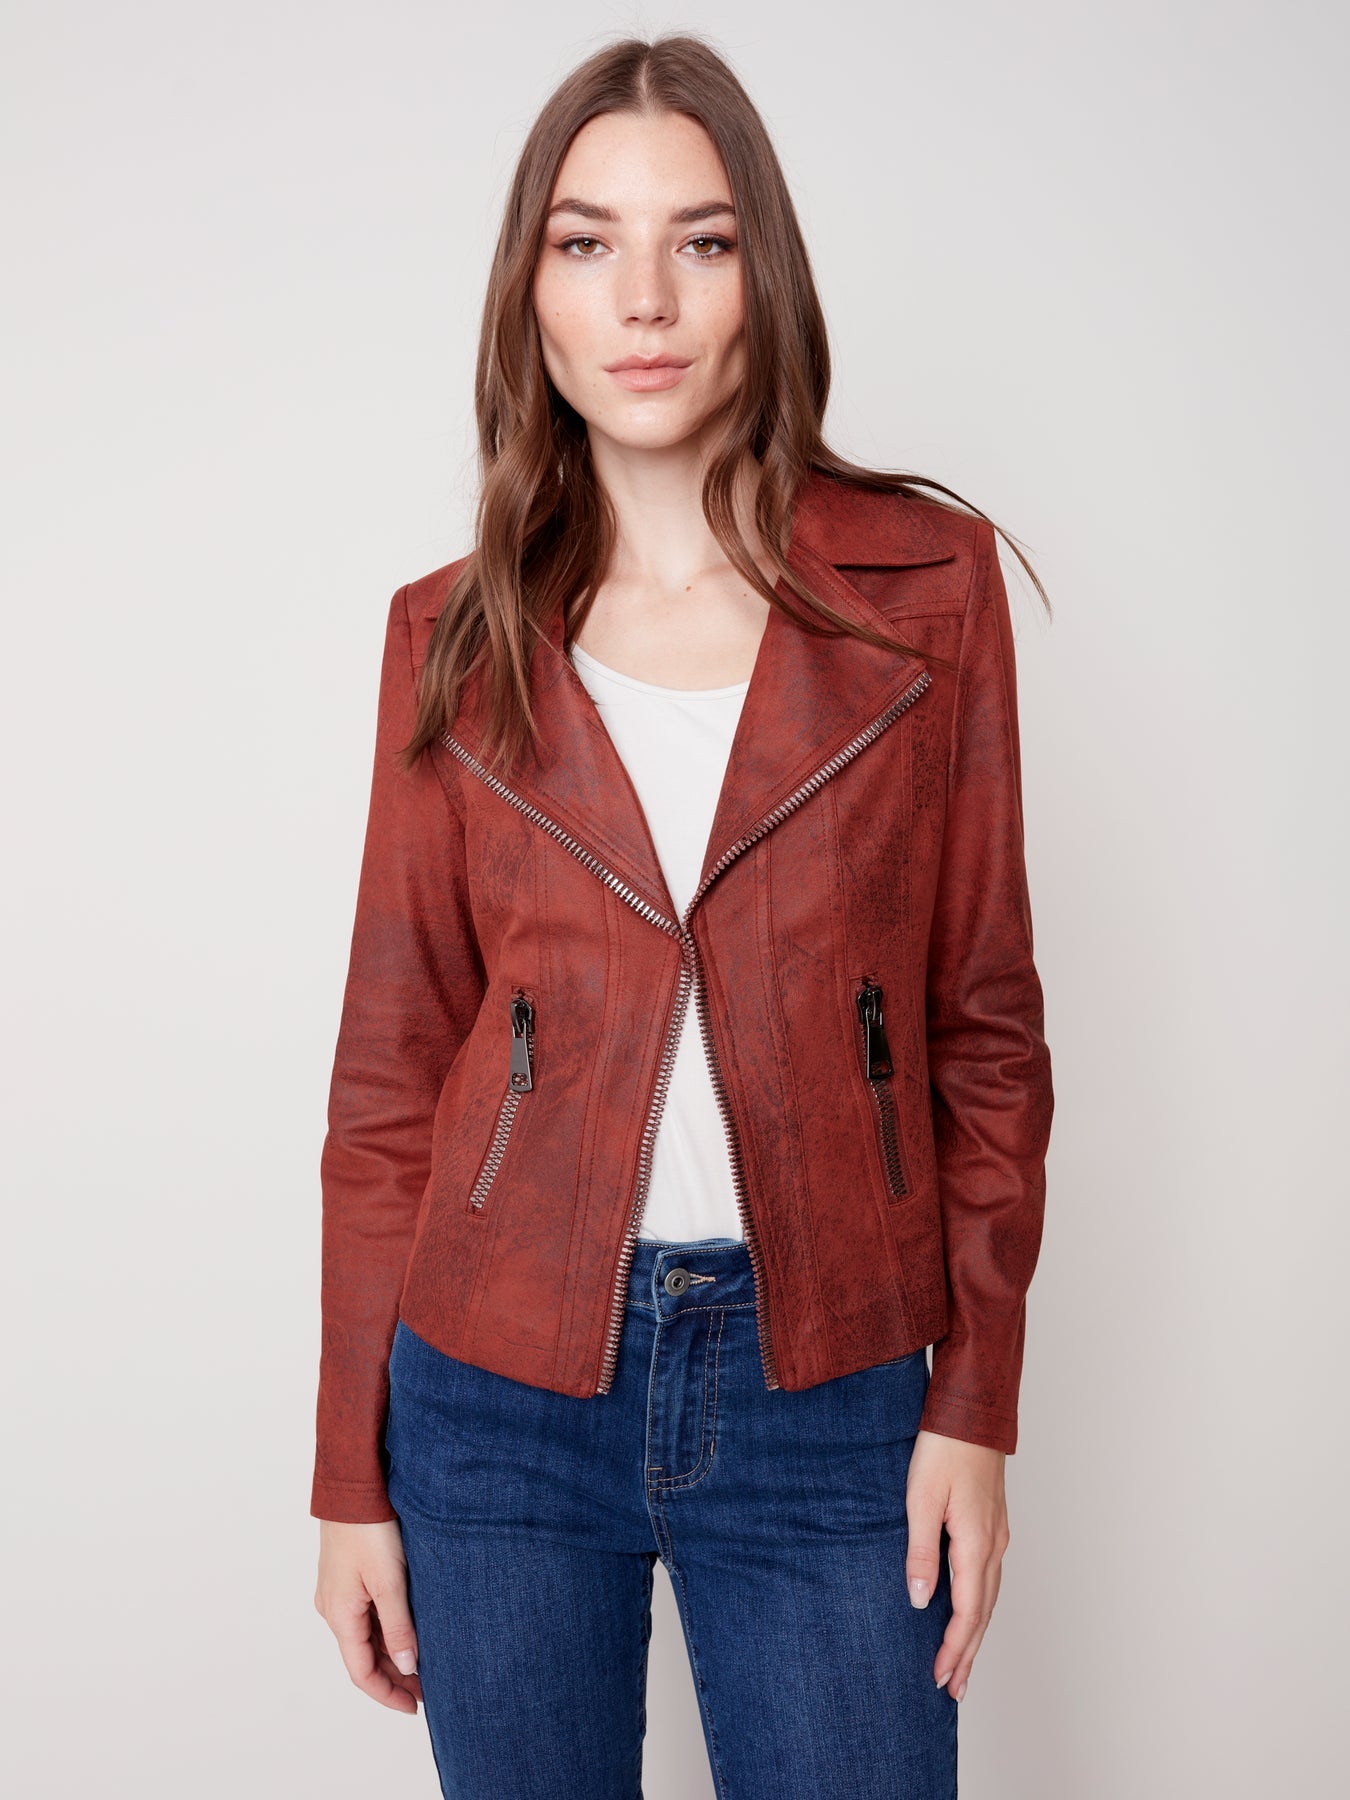 Cinnamon Vintage Leather Jacket